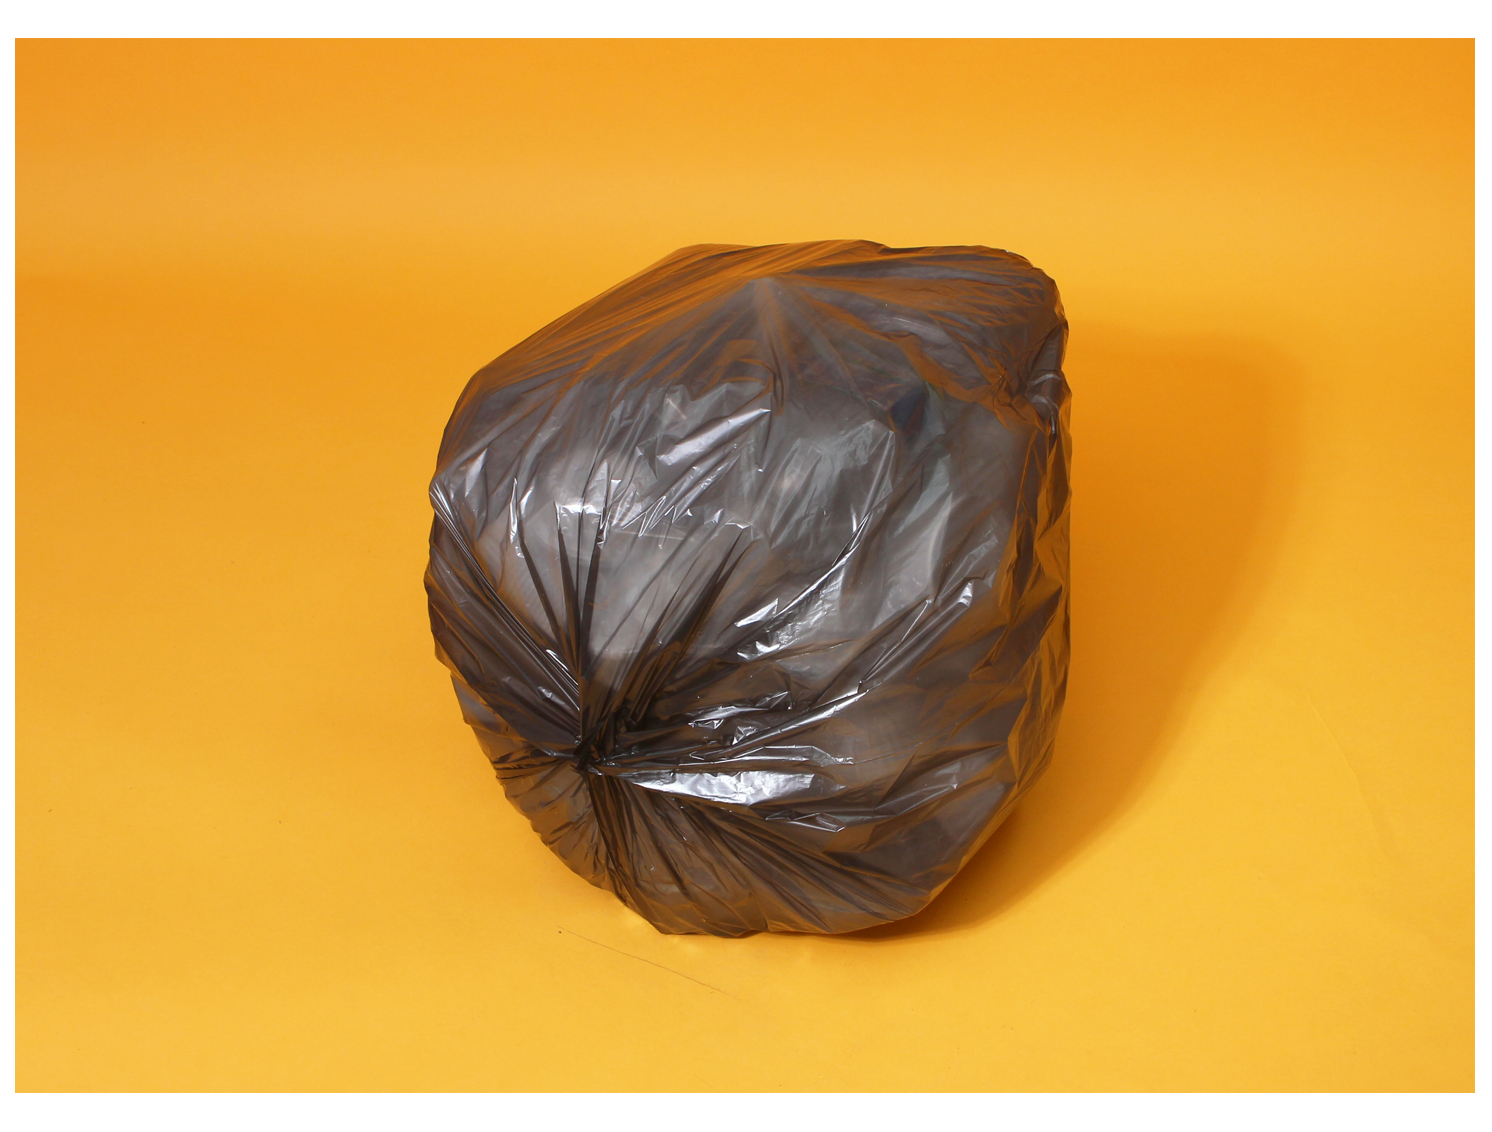 주황색 바탕화면에 쓰레기봉투에 재활용 플라스틱이 가득 담겨있다. 바닥면이 여러겹 배접 접합되어 동그랗게 모여있는 모습이다.